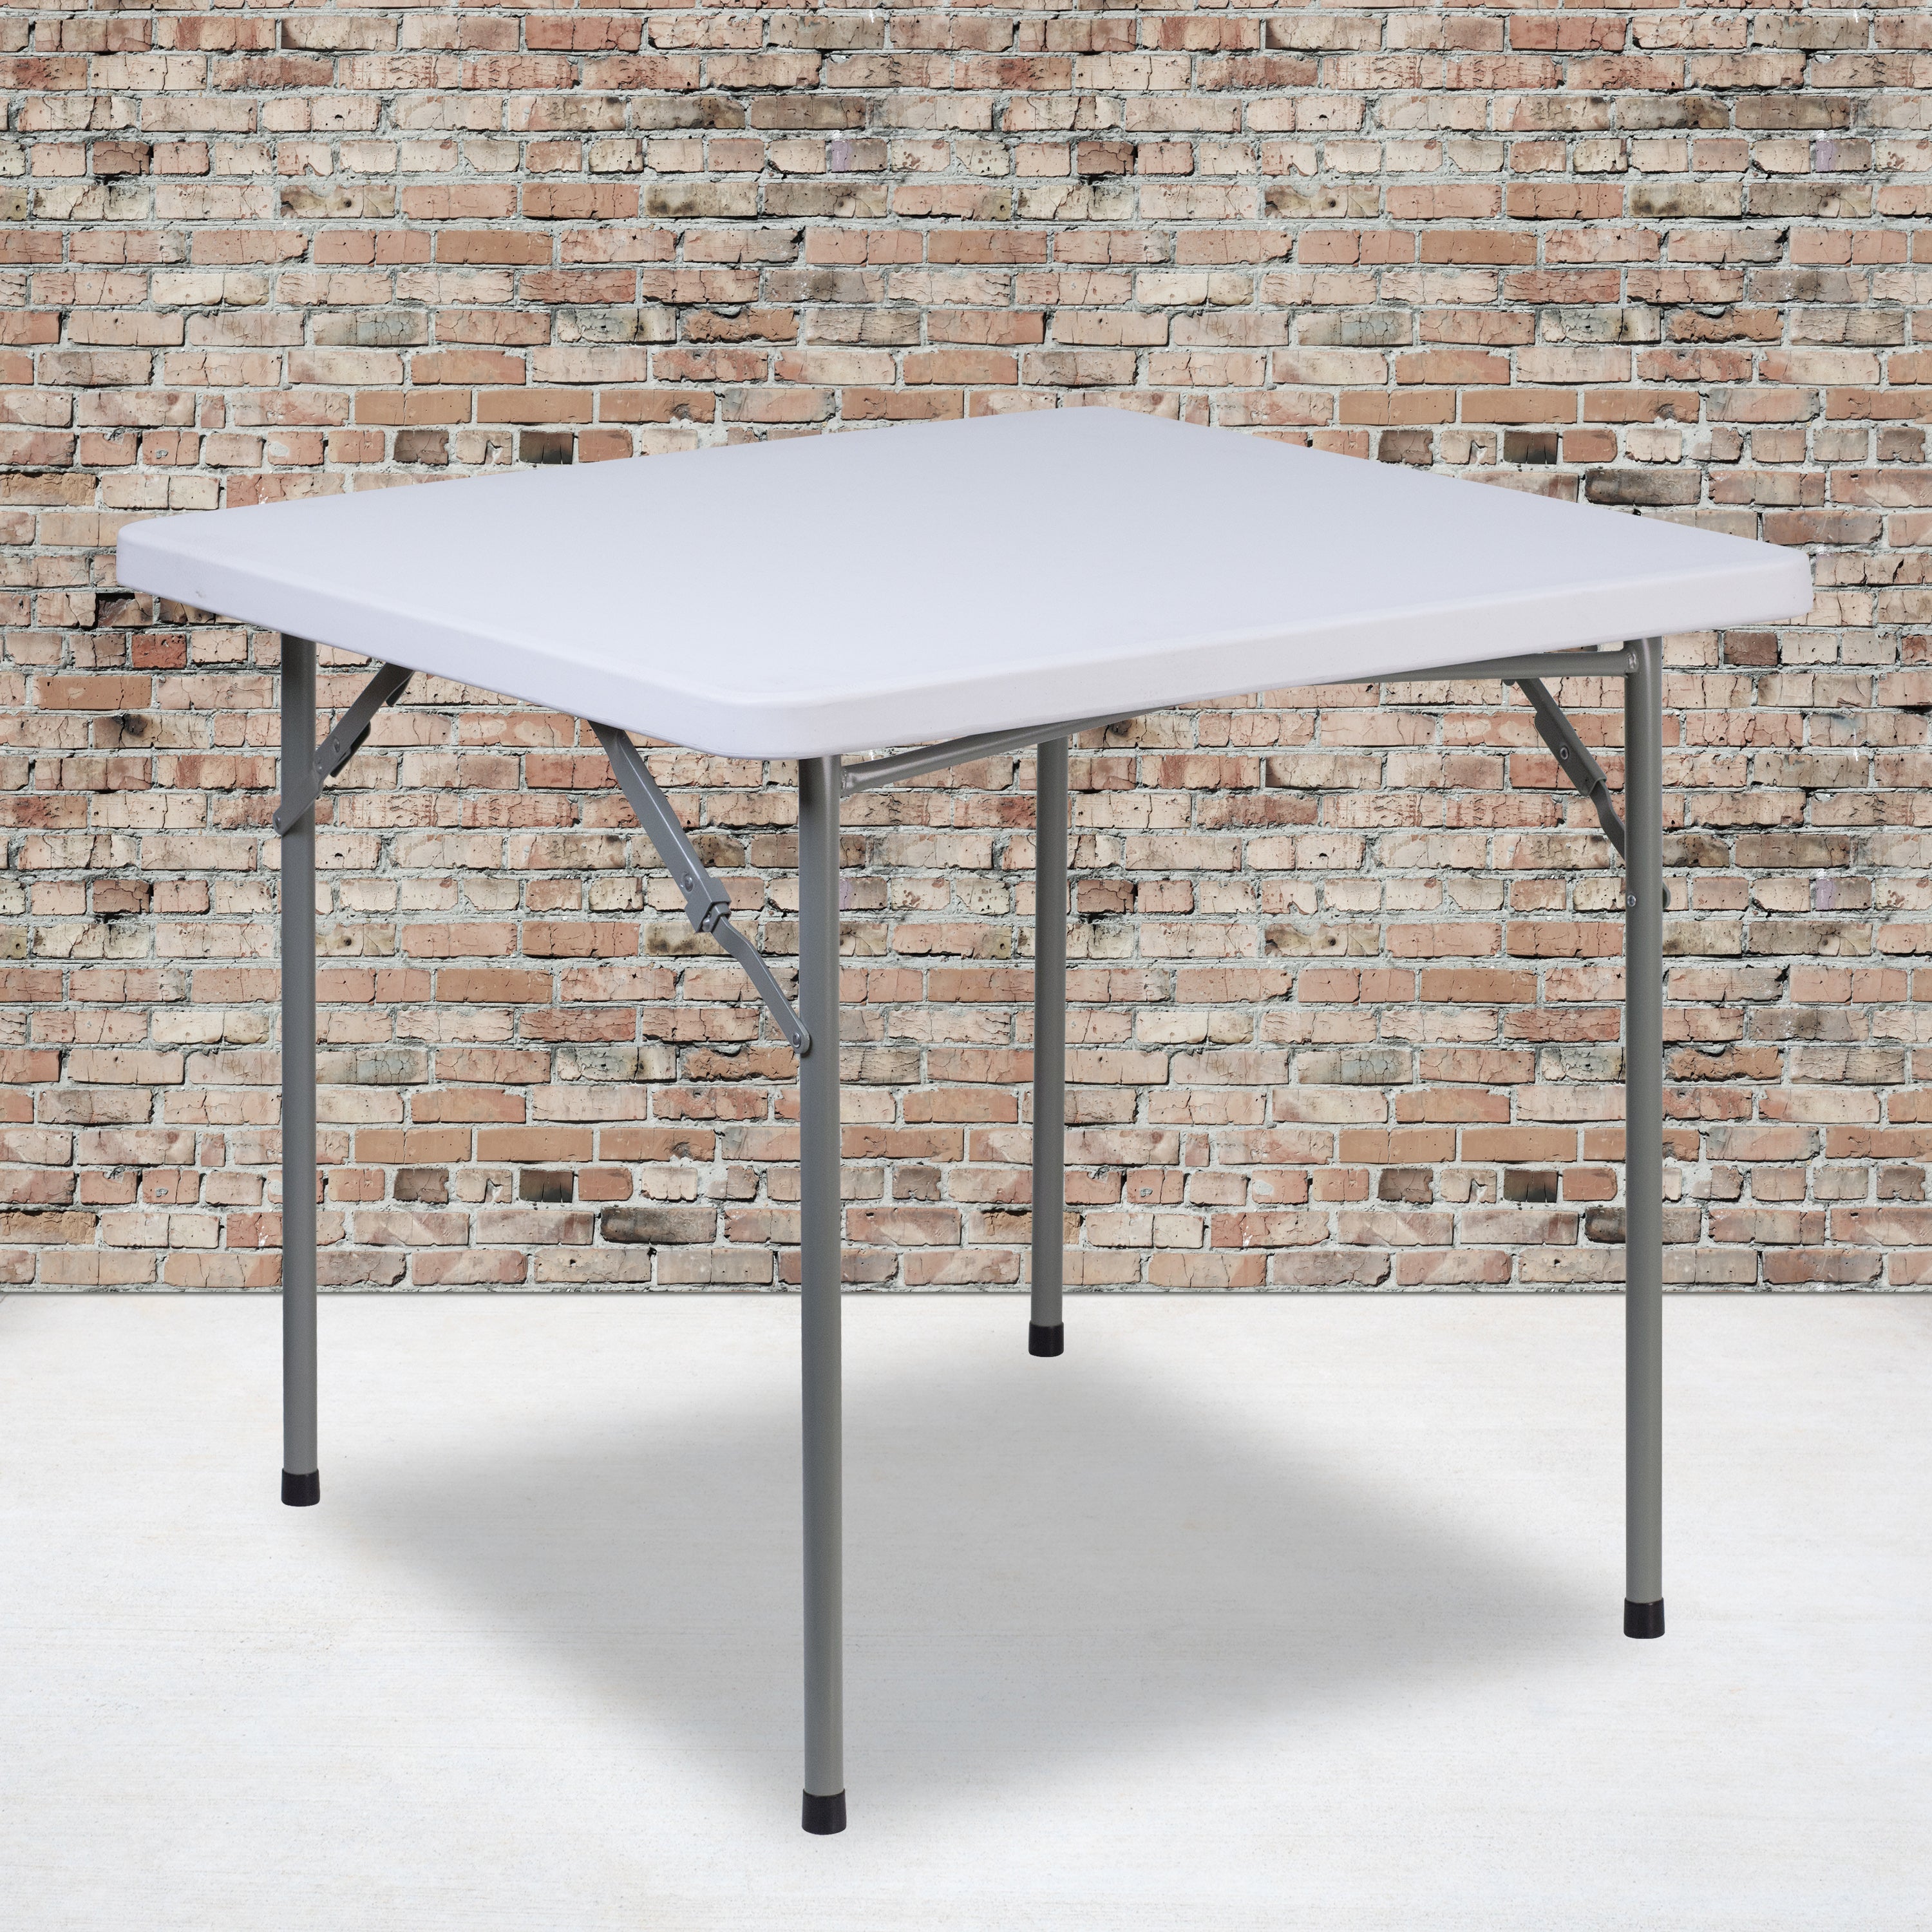 2.81-Foot Square Plastic Folding Table-Square Plastic Folding Table-Flash Furniture-Wall2Wall Furnishings